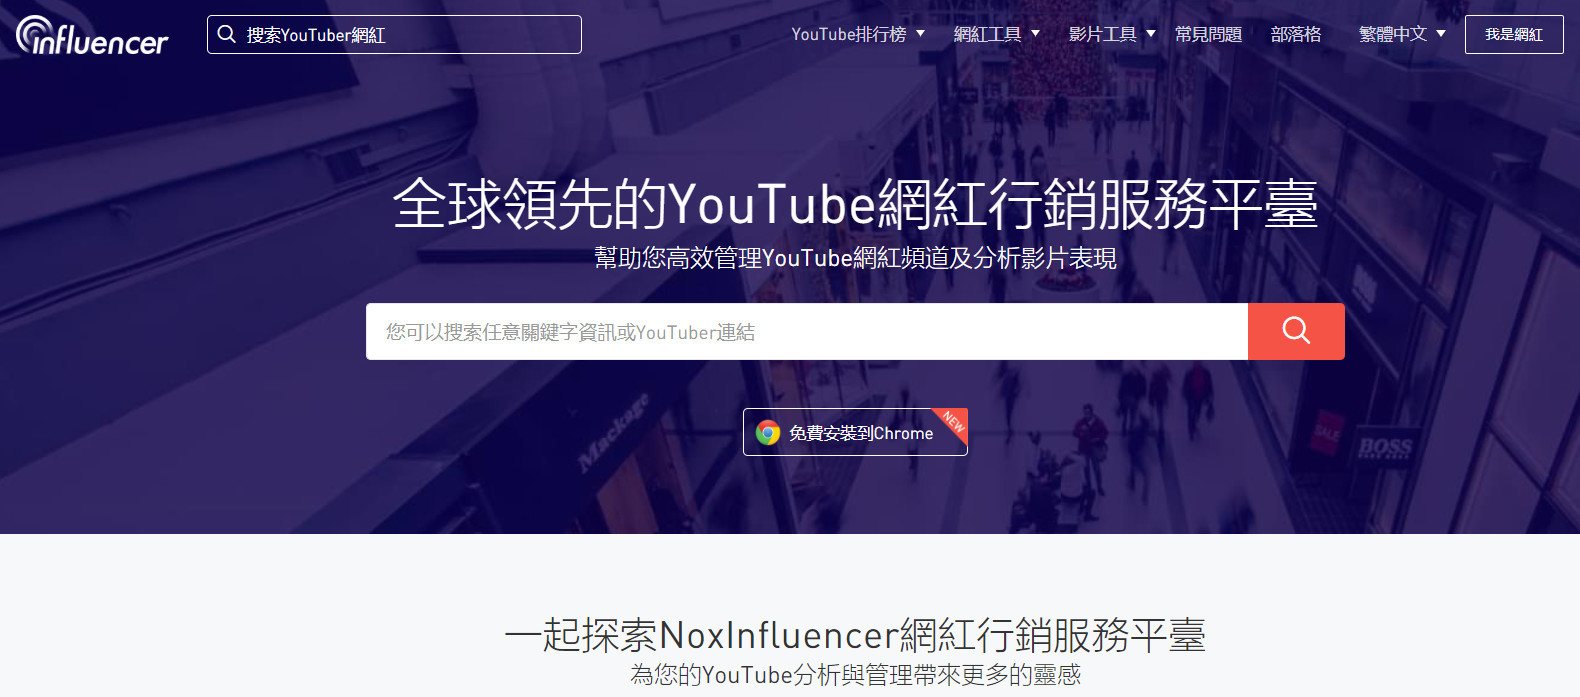 網紅行銷分析選擇工具-Noxinfluencer｜鯊客科技SEO網路行銷公司